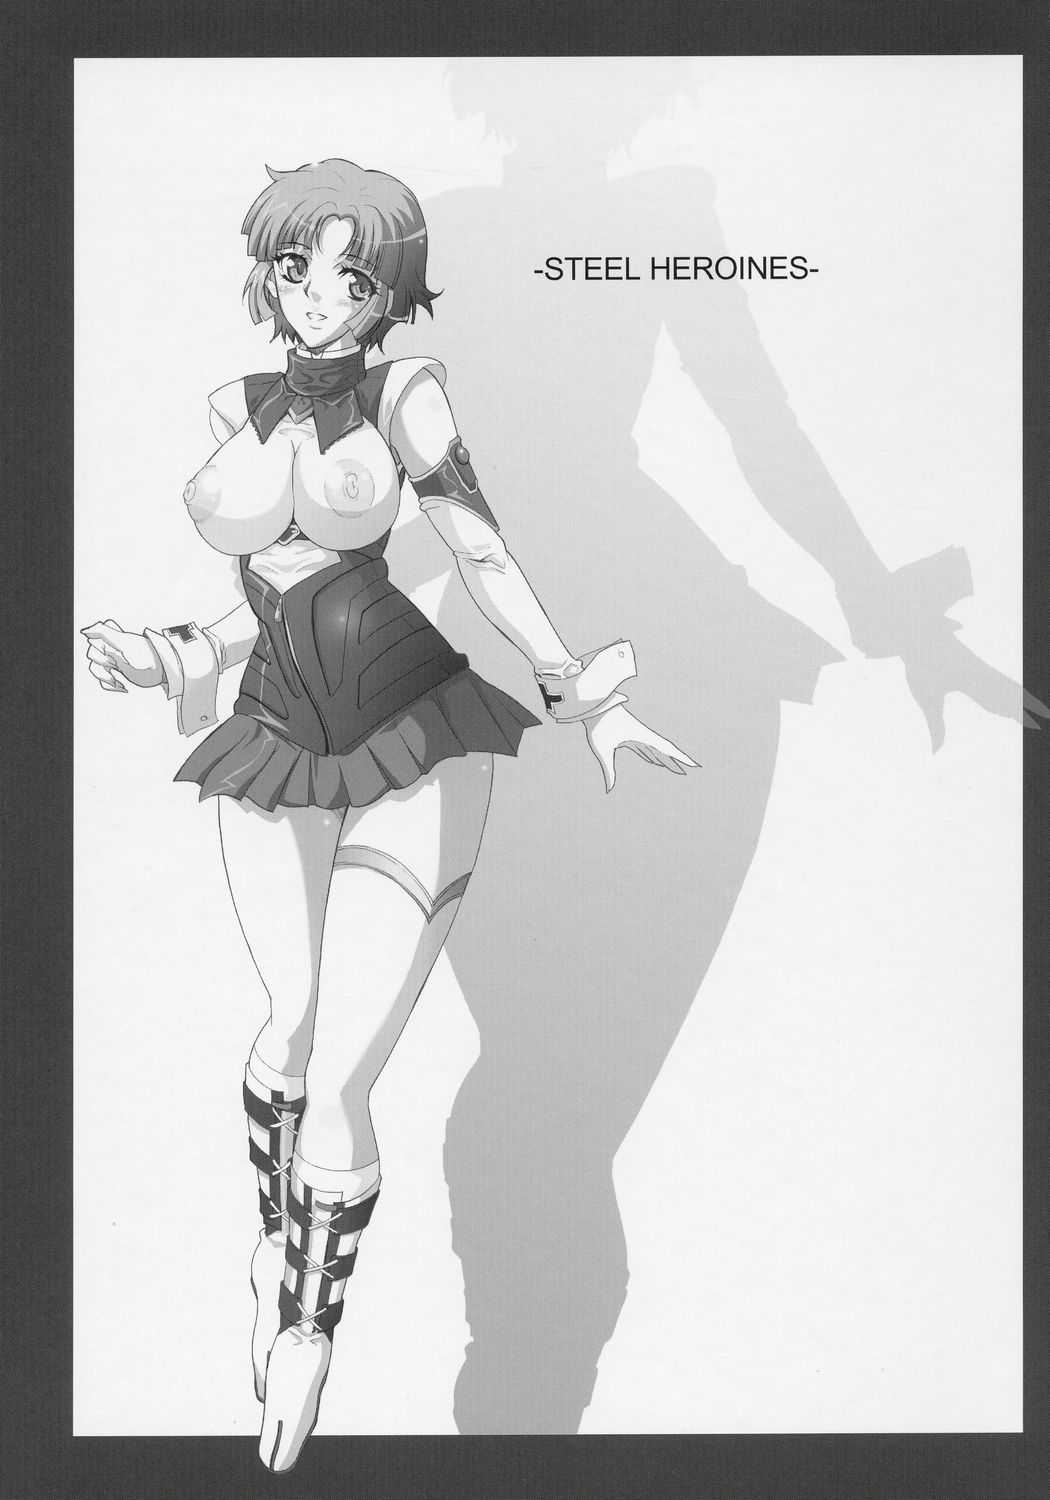 [Youkai Tamanokoshi (CHIRO)] Steel Heroines Vol. 1 (Super Robot Wars) (Spanish) (Kurotao) 